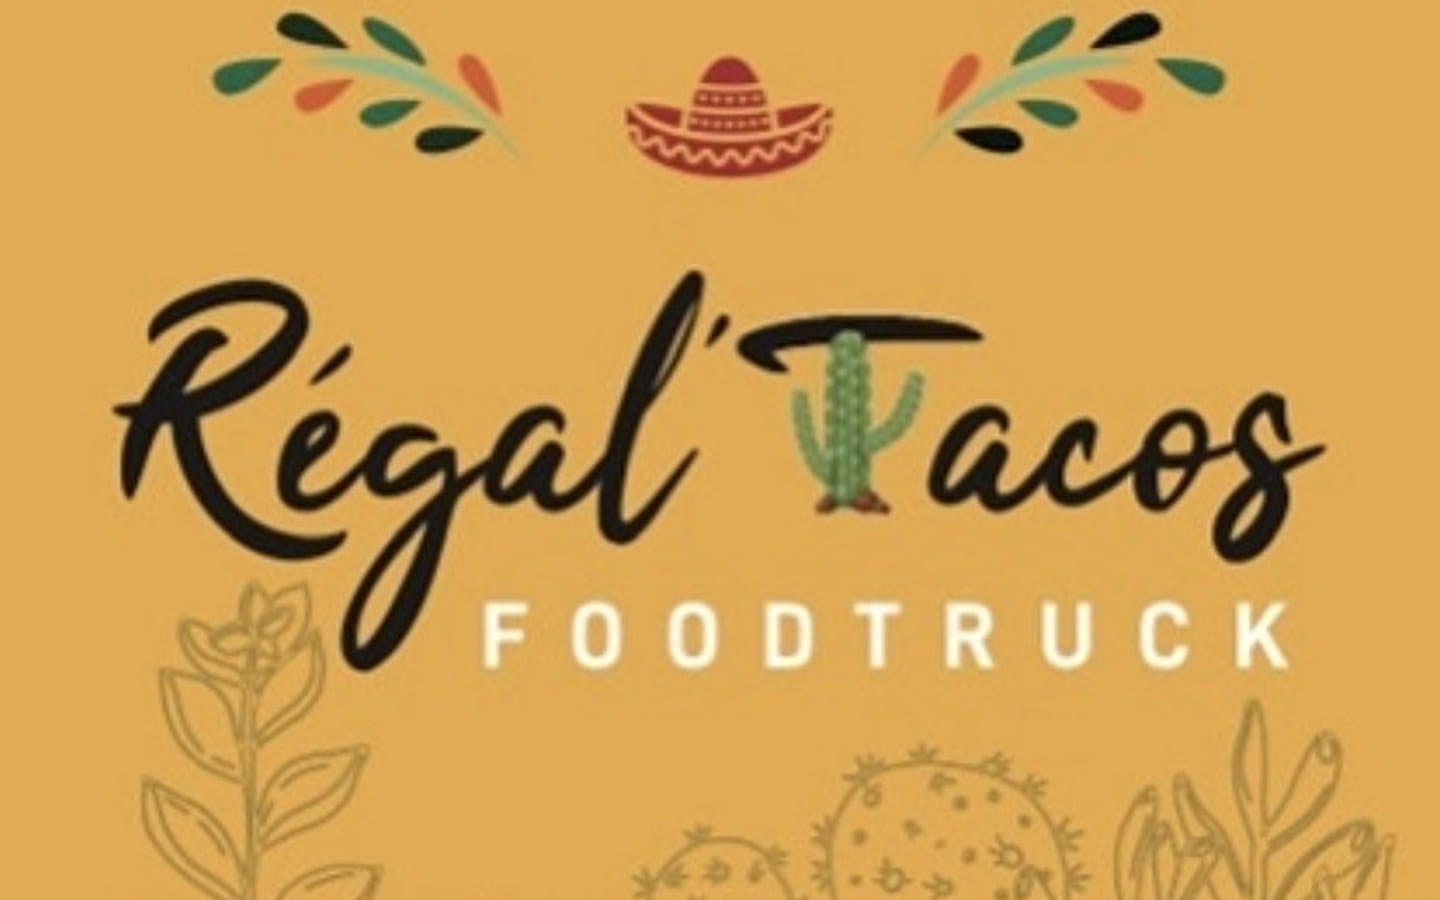 Régal'Tacos - Food truck